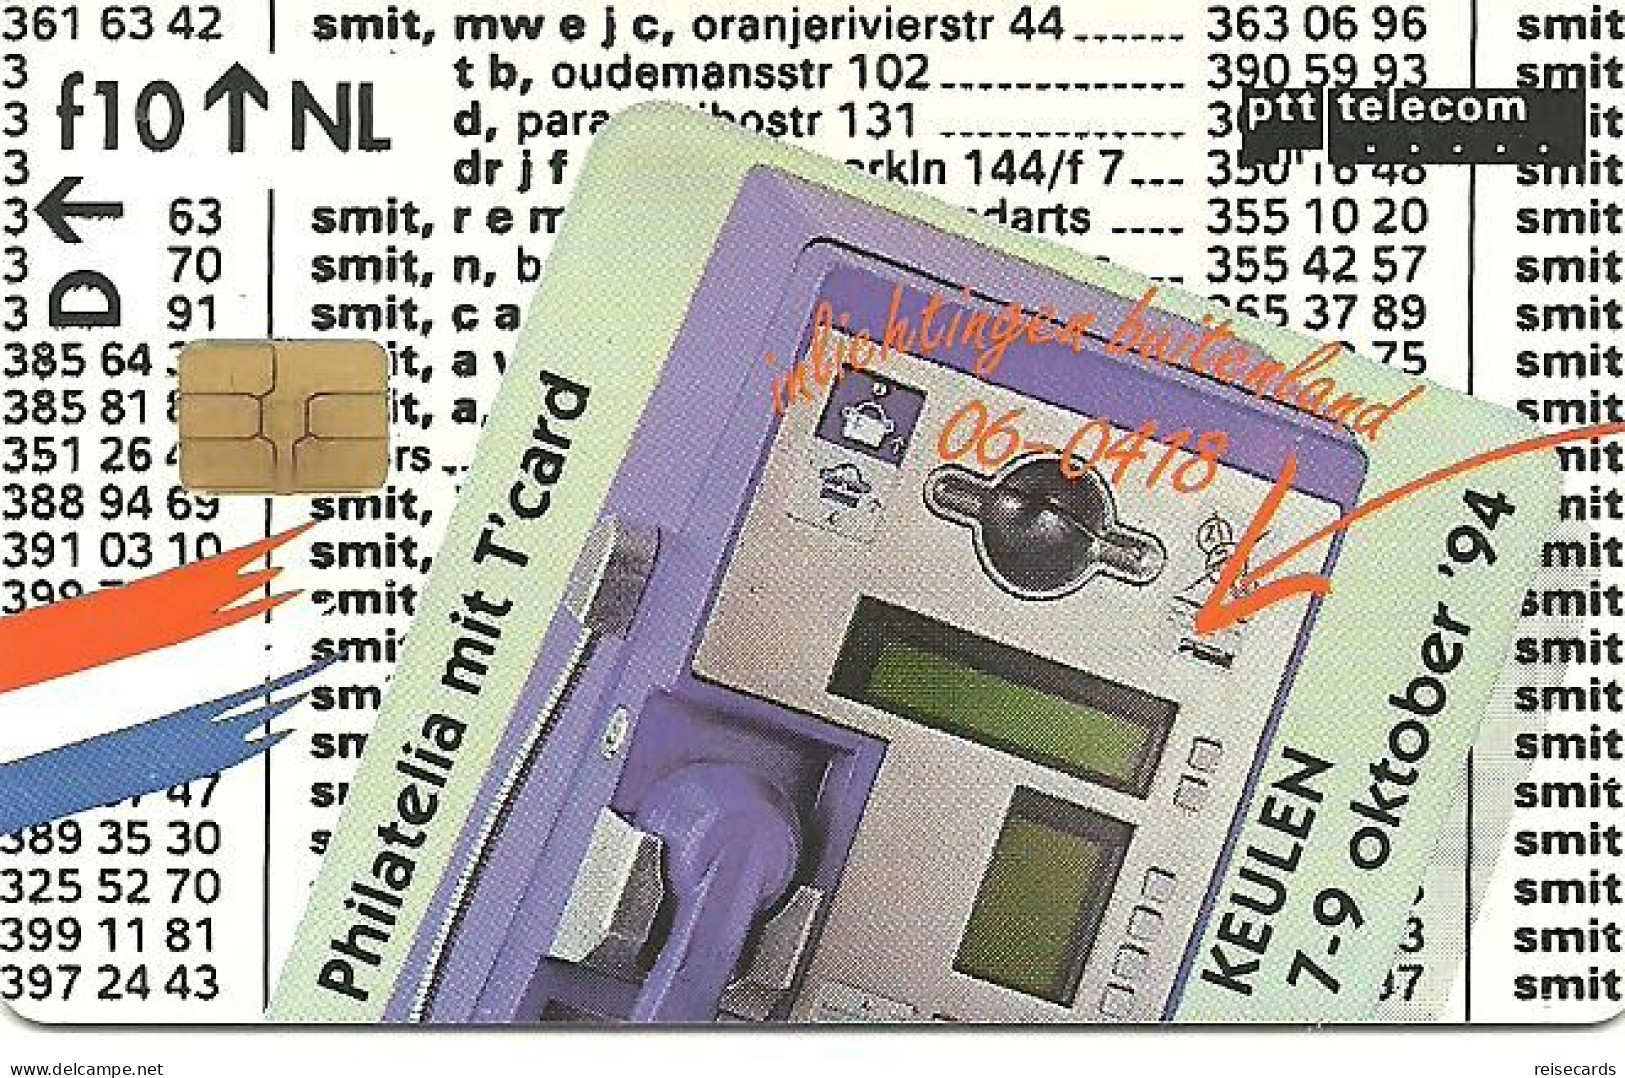 Netherlands: Ptt Telecom - 1994 Philatelia Mit T'card '94 Exhibition, Köln. Mint - öffentlich